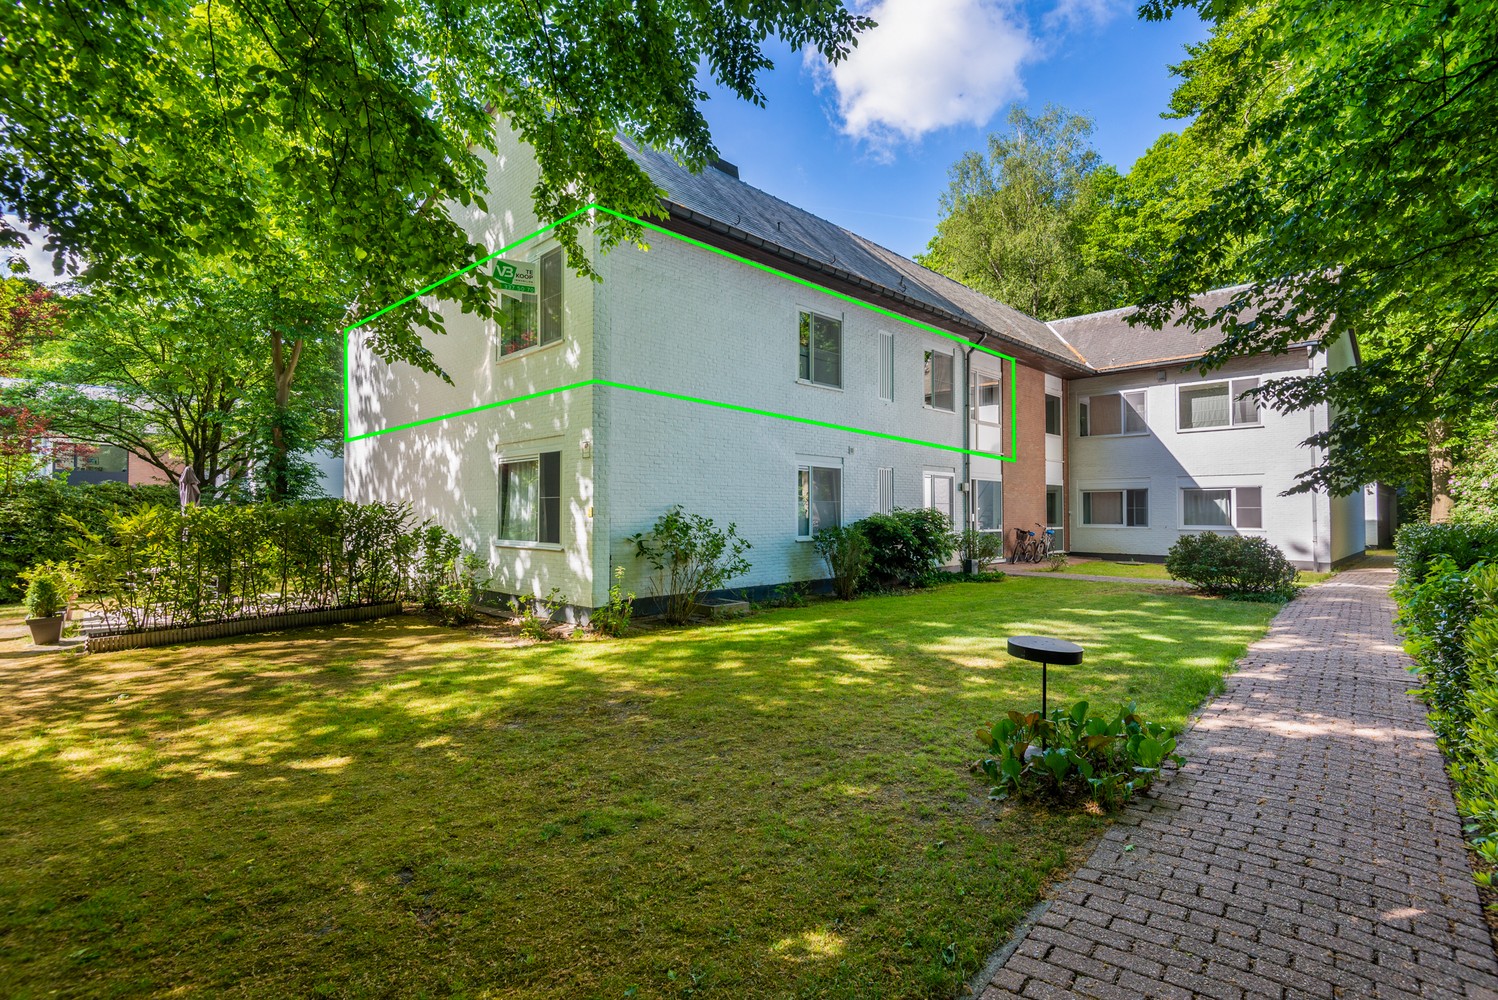 Riant appartement (148 m²) met 2 slaapkamers, terras en omringd door groen. afbeelding 19